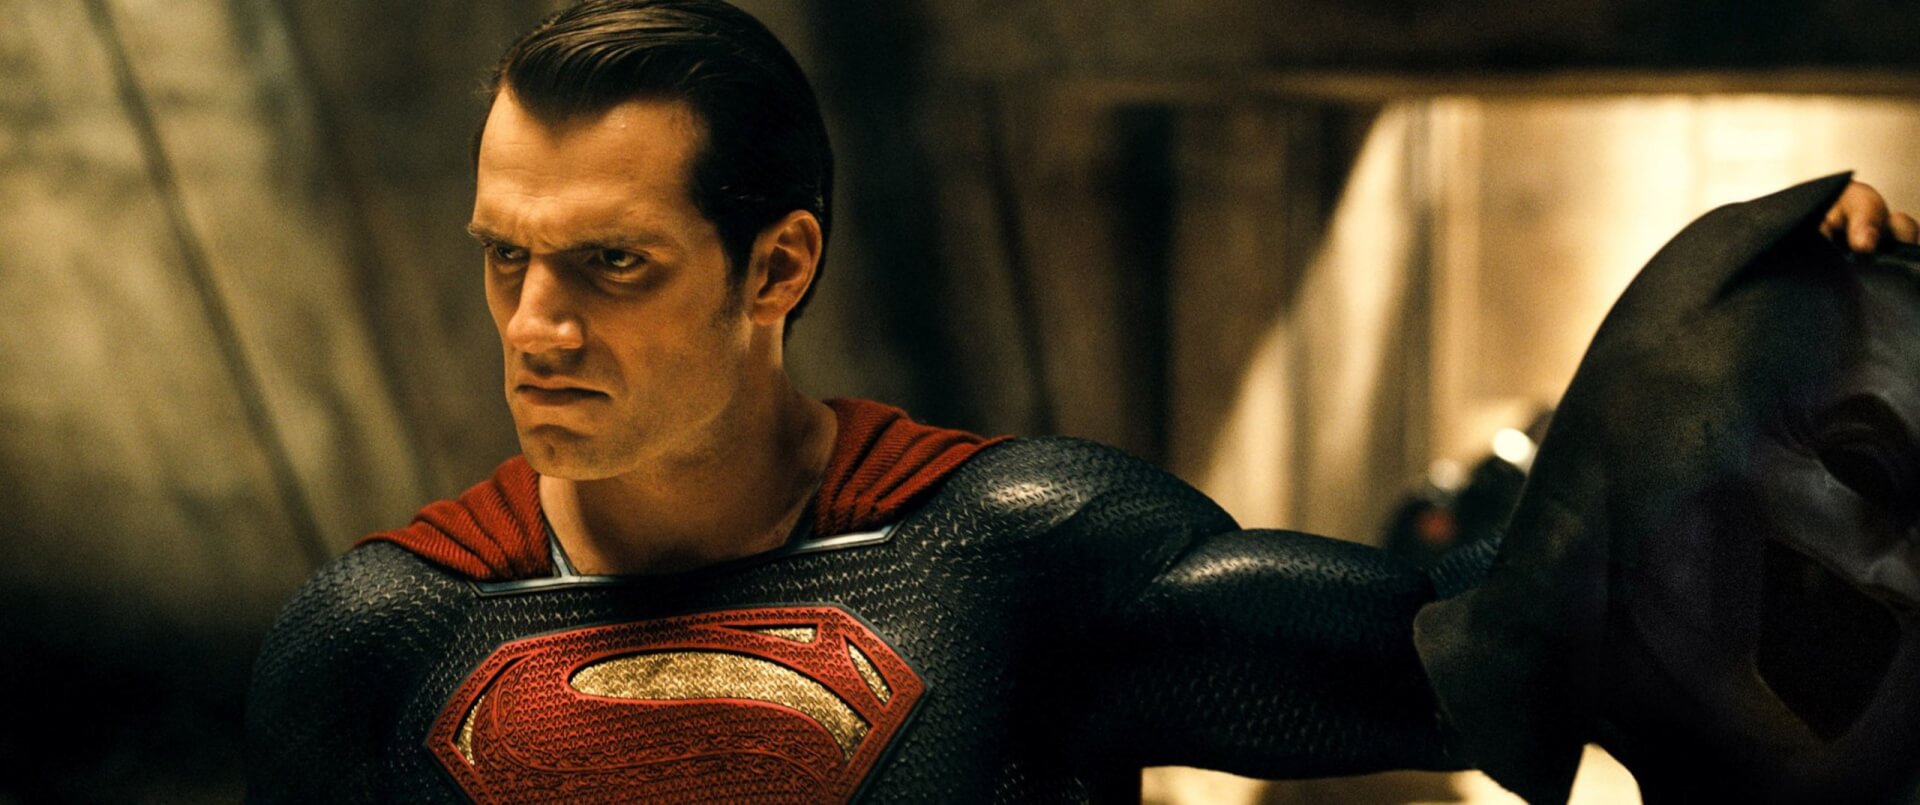 Henry Cavill még mindig Superman akar lenni: “A köpeny még mindig a szekrényben van”